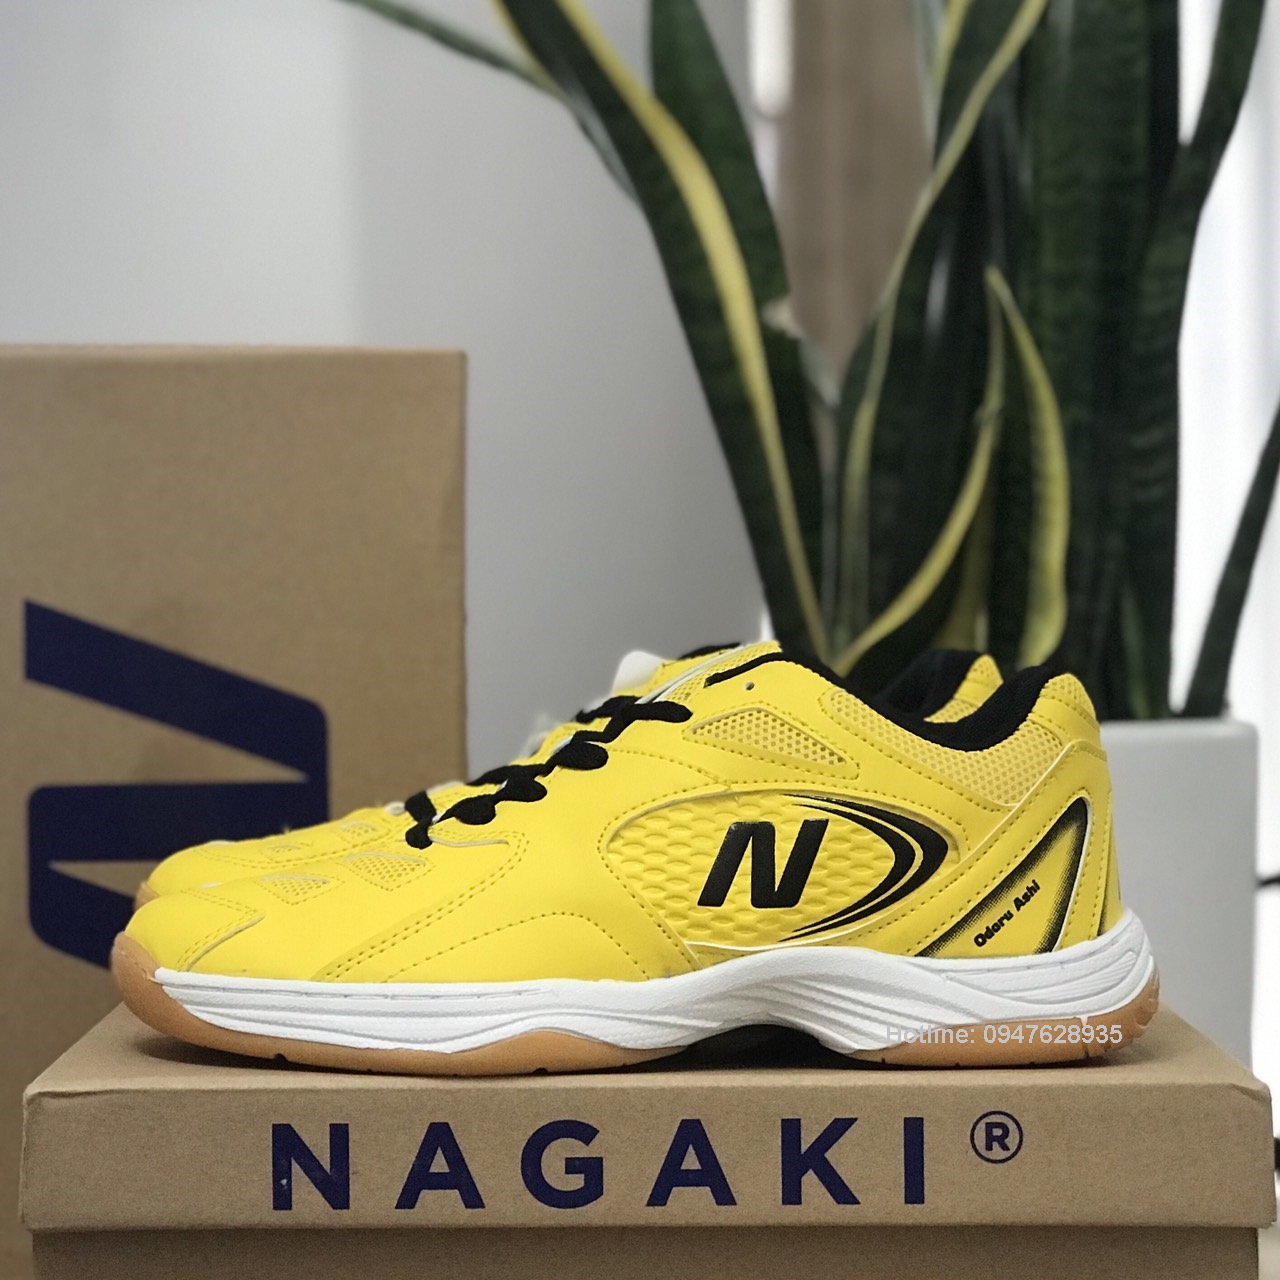 Giày Nagaki Ashi mẫu mới, chuyên dụng chơi thể thao cầu lông, bóng chuyền, bóng bàn - chính hãng